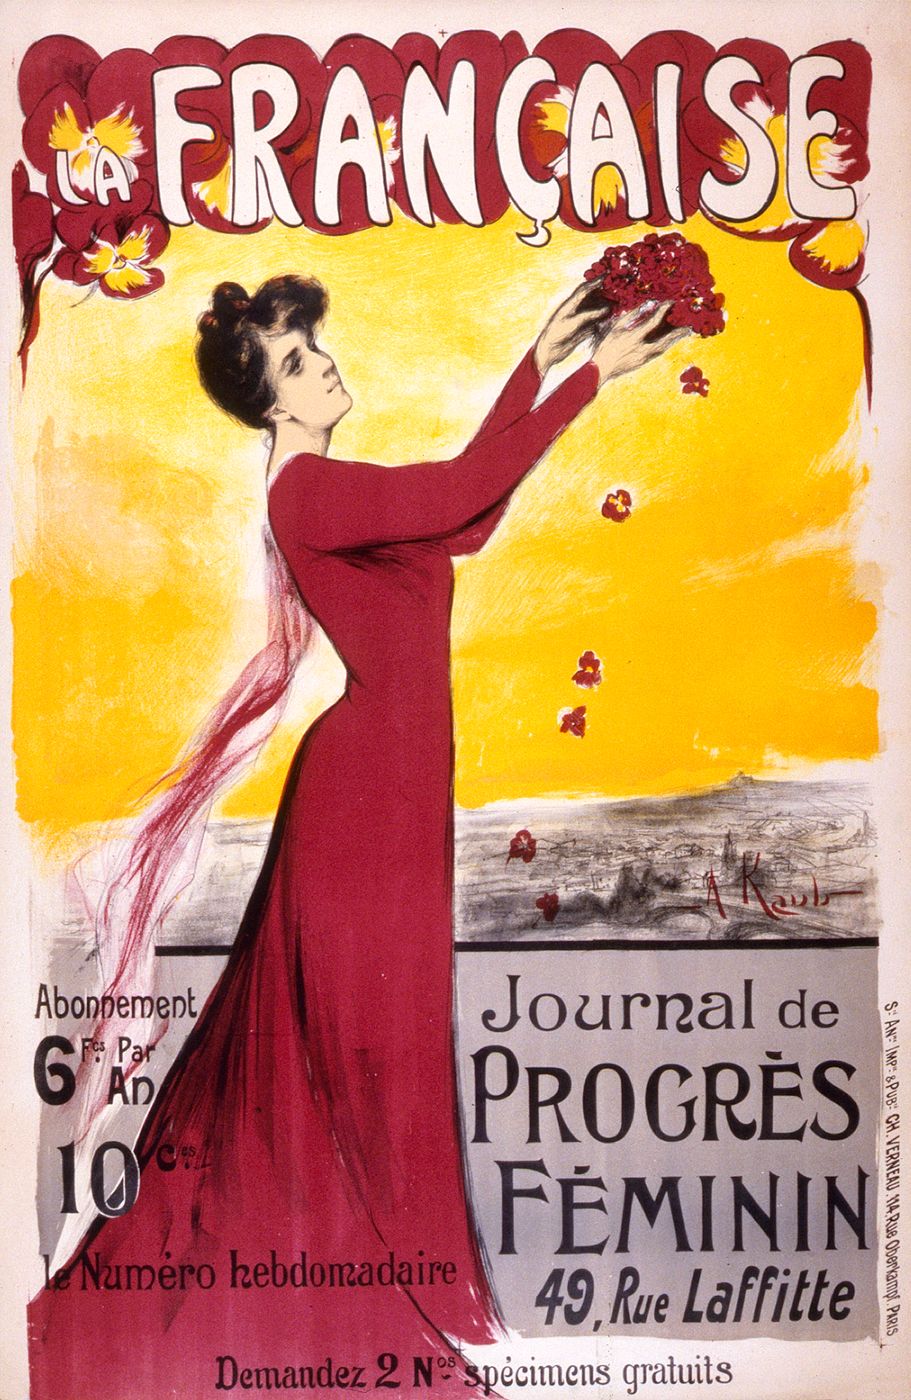 La Française. Journal de progrès féminin